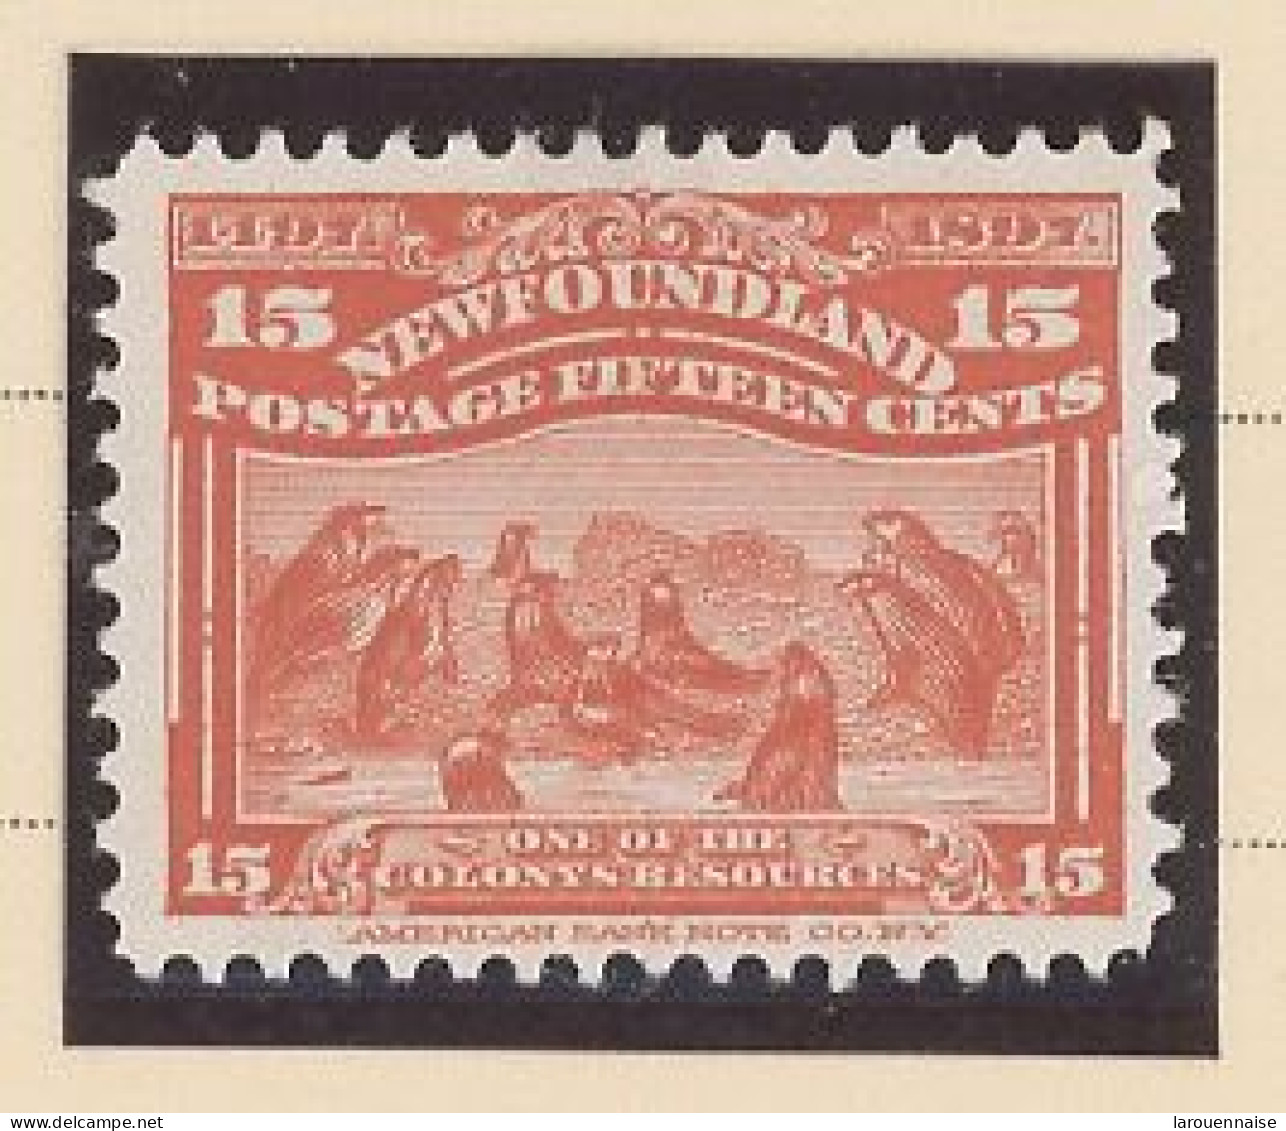 TERRE-NEUVE -N°57 - 15 Cent  VERMILLON  - N SG - 1897 - 1865-1902